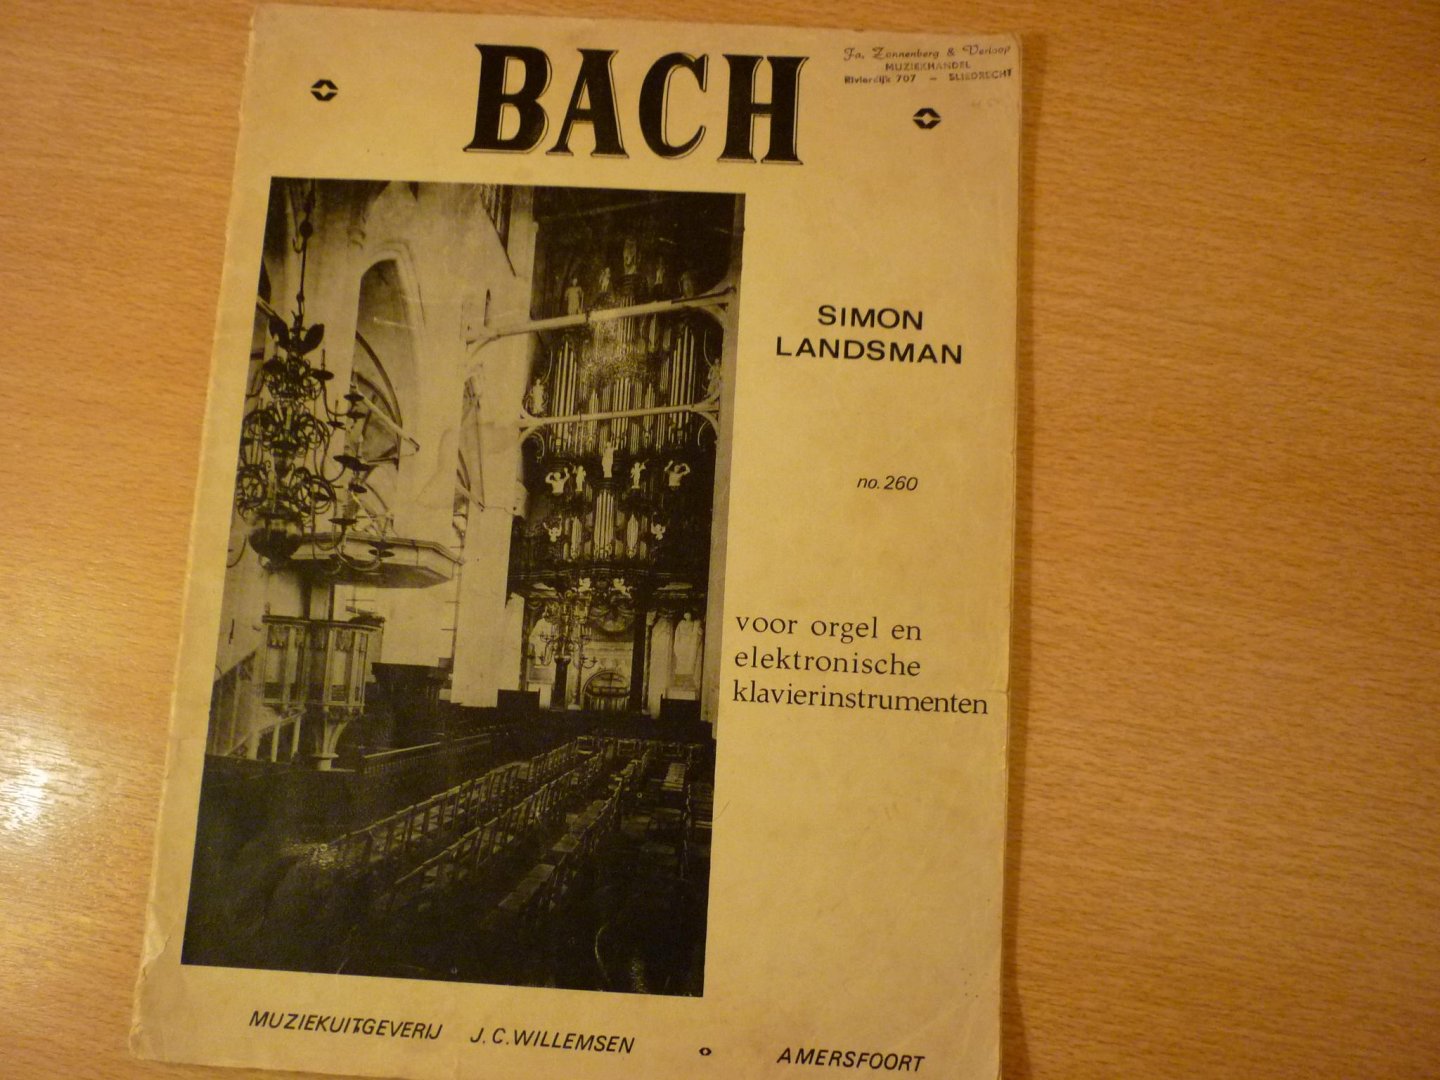 Landsman; Simon - Bach